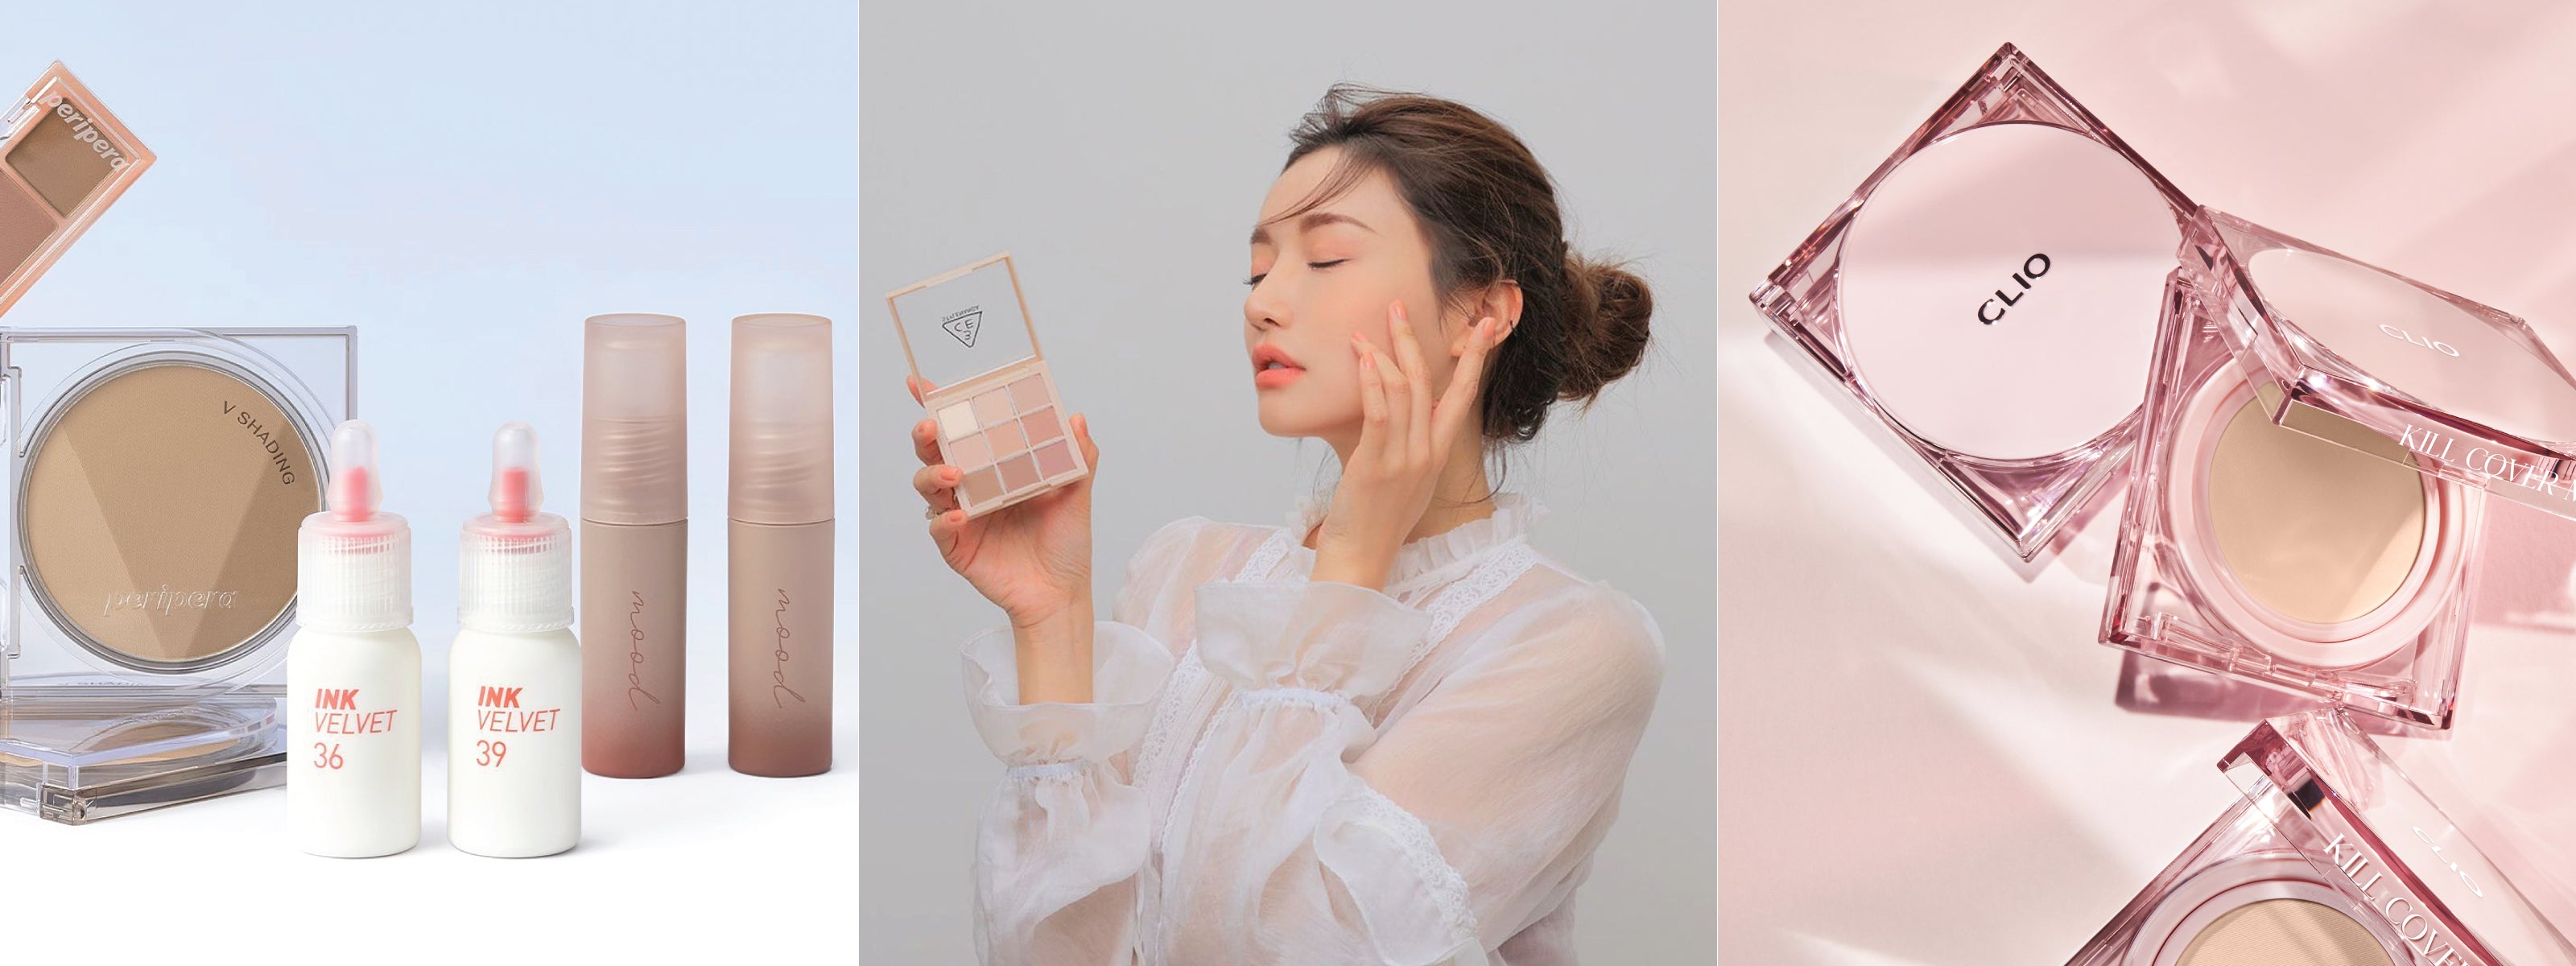 ROUND LAB: Meet Korea's Number 1 Skincare Brand – Skin Cupid